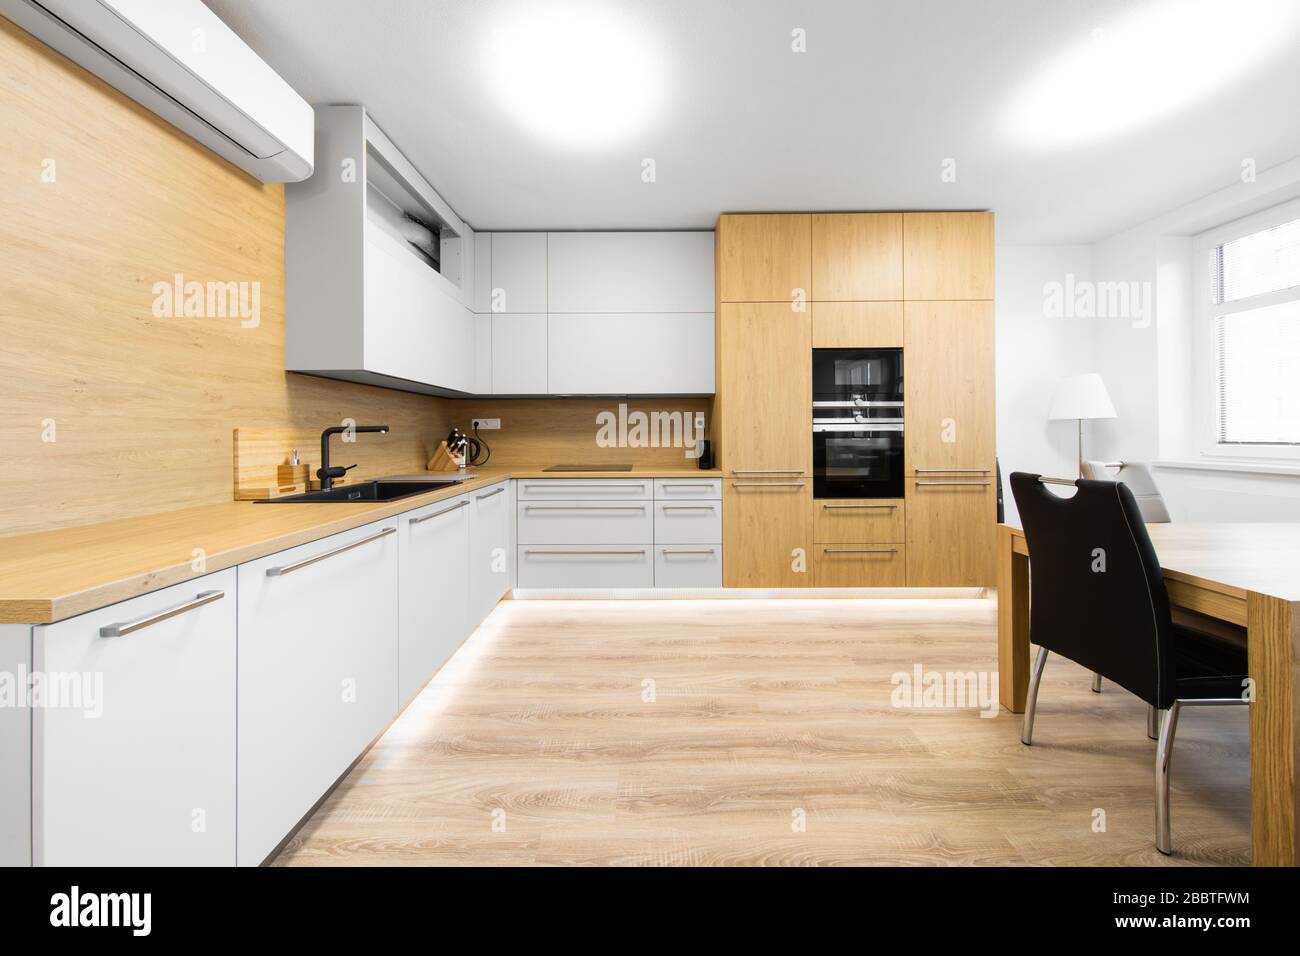 Moderne Küche mit schwarzem Waschbecken und Klimaanlage Stockfotografie -  Alamy